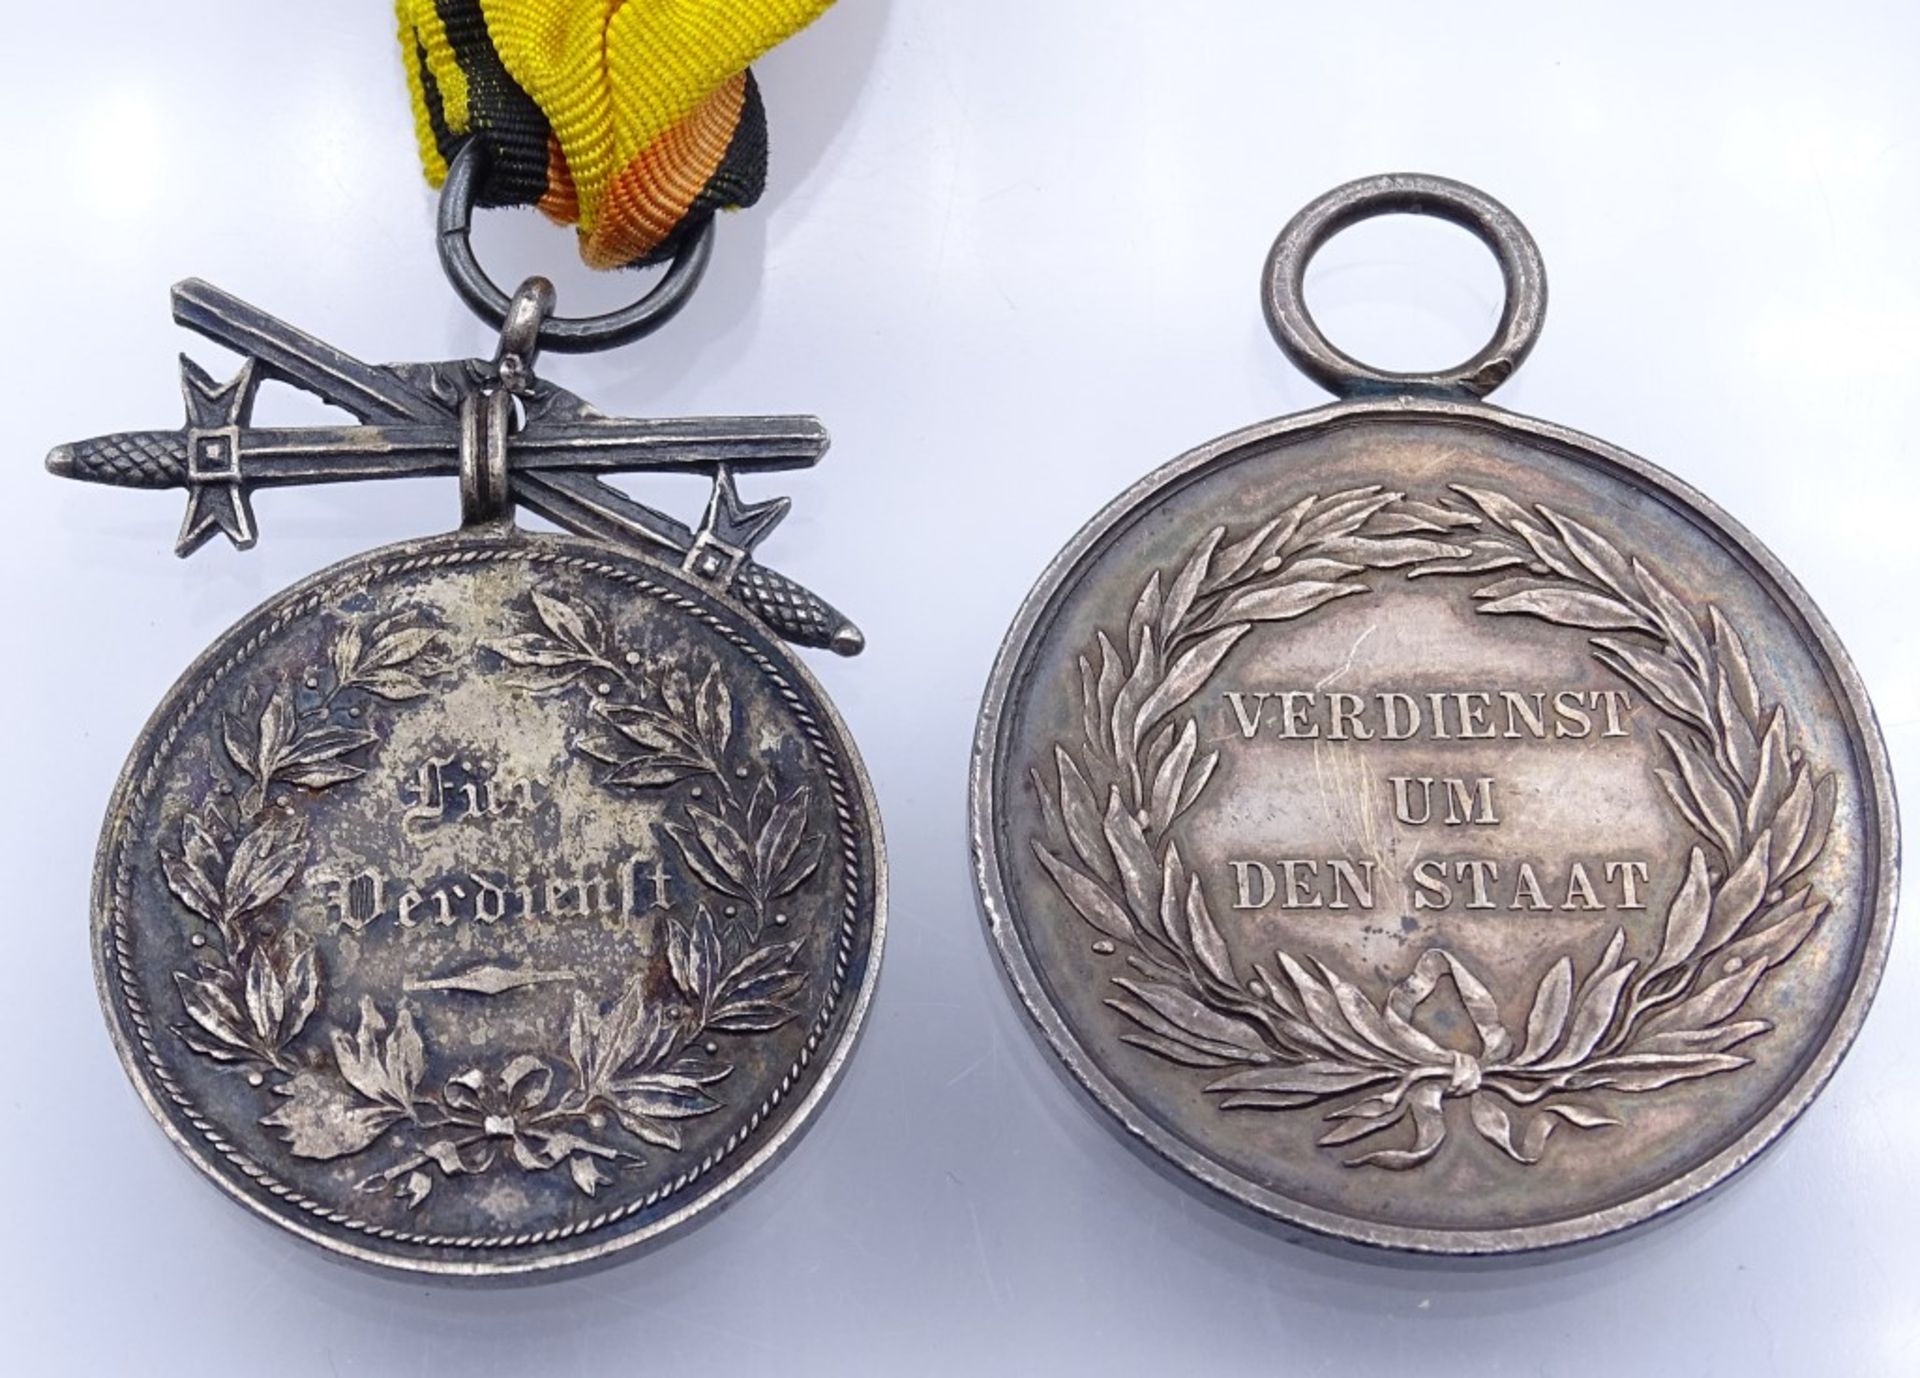 Zwei Verdienst Medaillen "Verdienst um den Staat und Für Verdienst< - Bild 3 aus 3